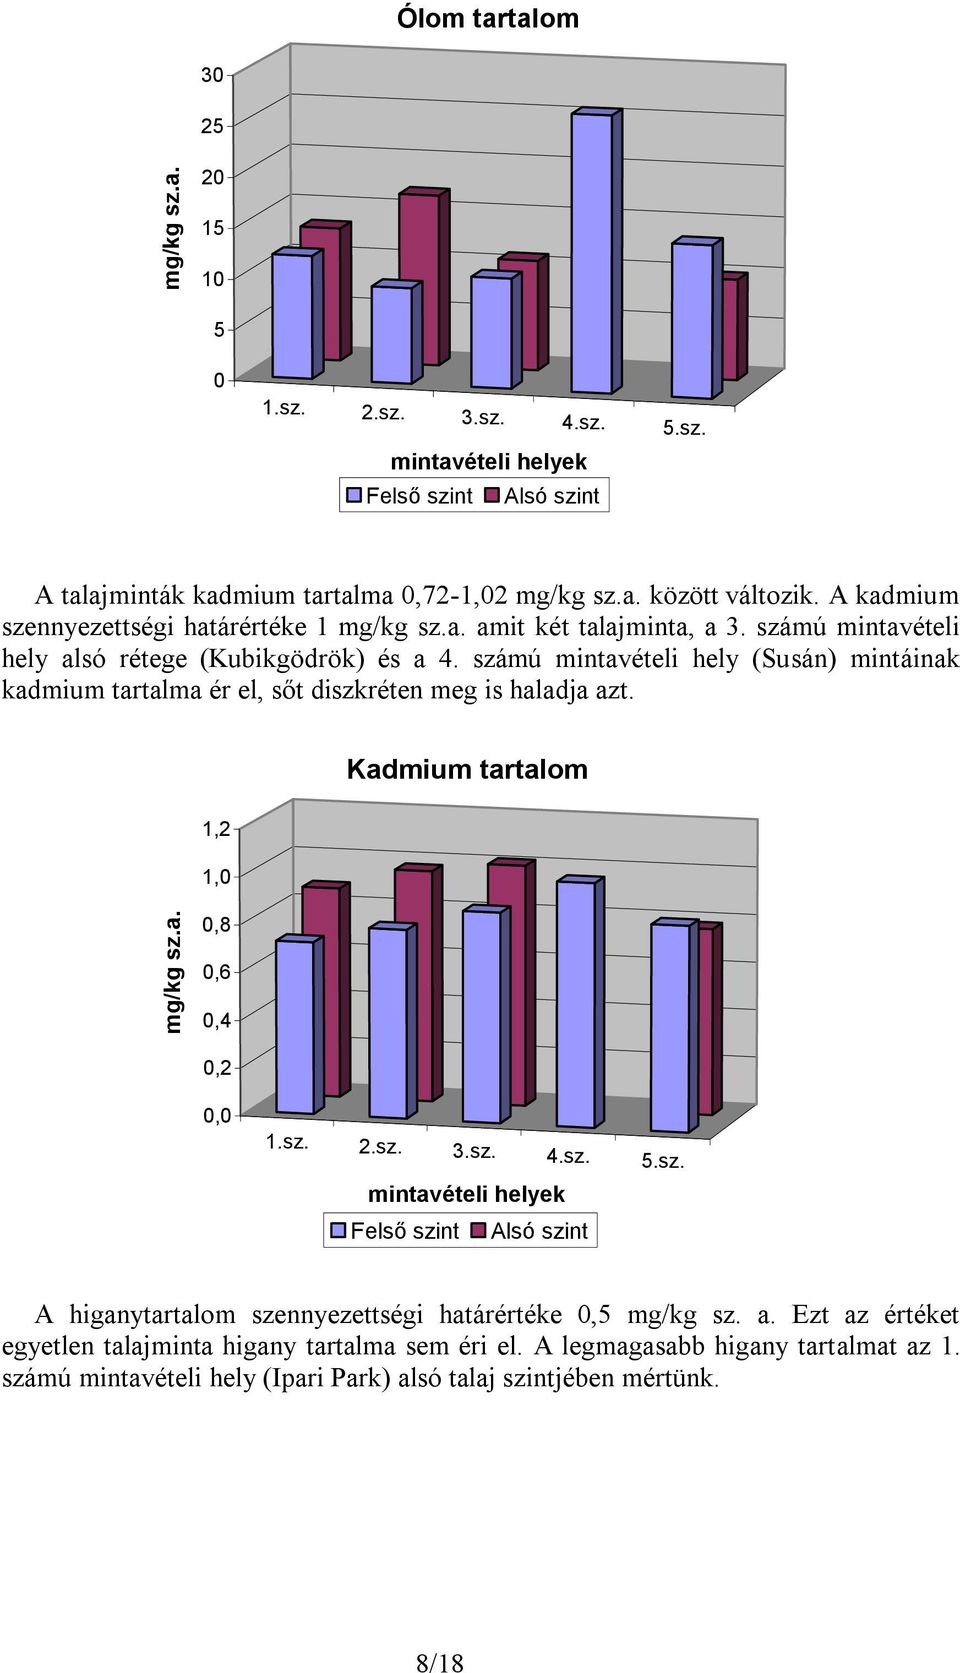 számú mintavételi hely (Susán) mintáinak kadmium tartalma ér el, sőt diszkréten meg is haladja azt. Kadmium tartalom 1,2 1,0 mg/kg sz.a. 0,8 0,6 0,4 0,2 0,0 1.sz. 2.sz. 3.sz. 4.sz. 5.sz. mintavételi helyek Felső szint Alsó szint A higanytartalom szennyezettségi határértéke 0,5 mg/kg sz.